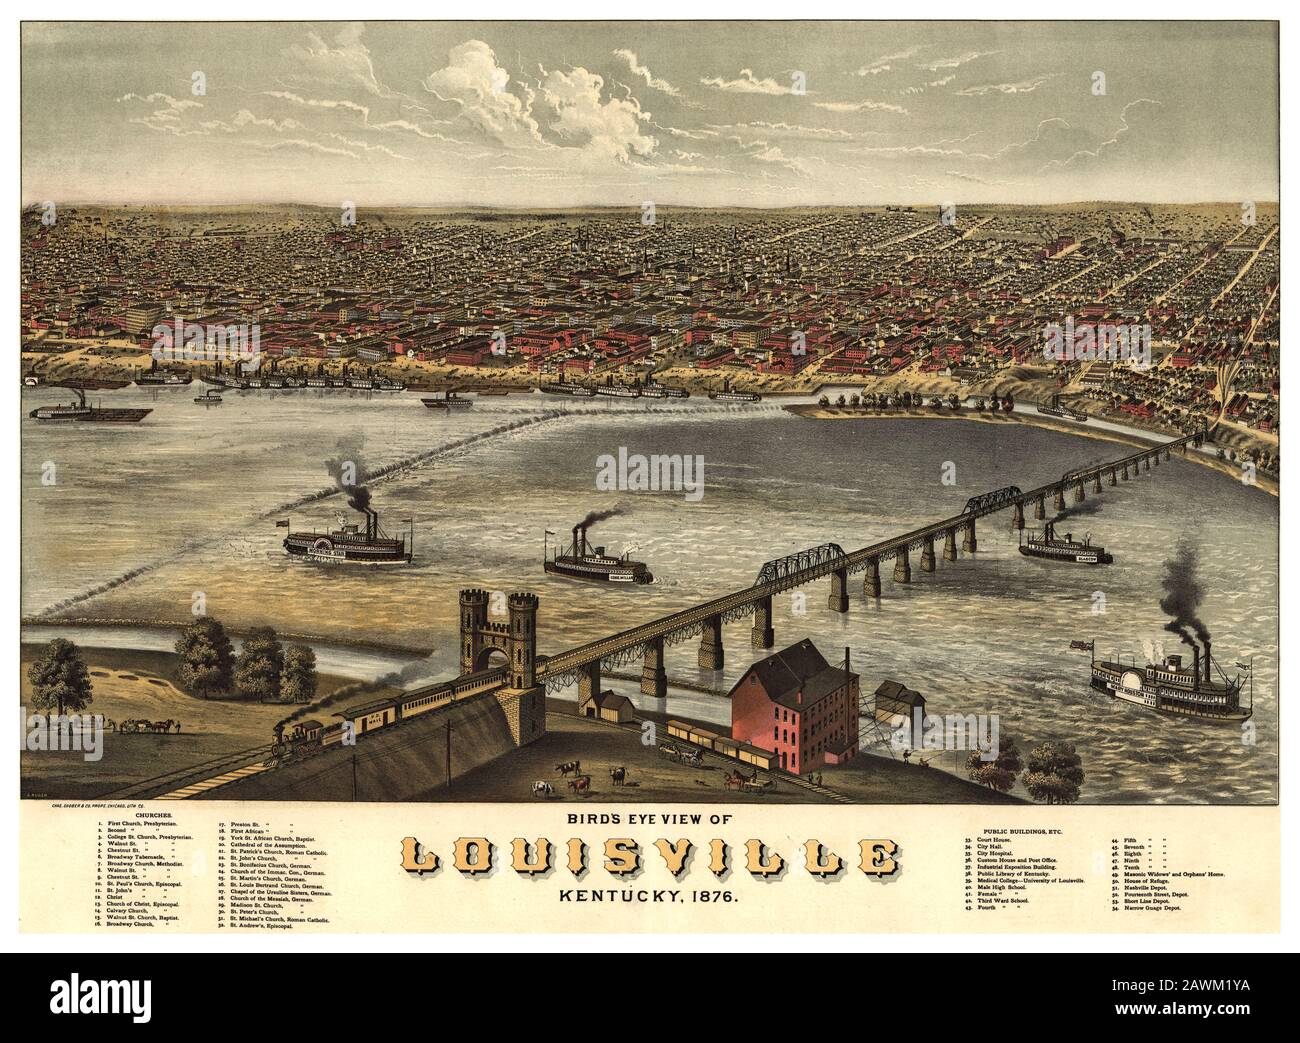 Vintage LOUISVILLE Kentucky Plakat hochauflösende Illustration von 1876 Lithograph Birds Eye View mit prominenten Gebäuden mit Anmerkungen Stockfoto